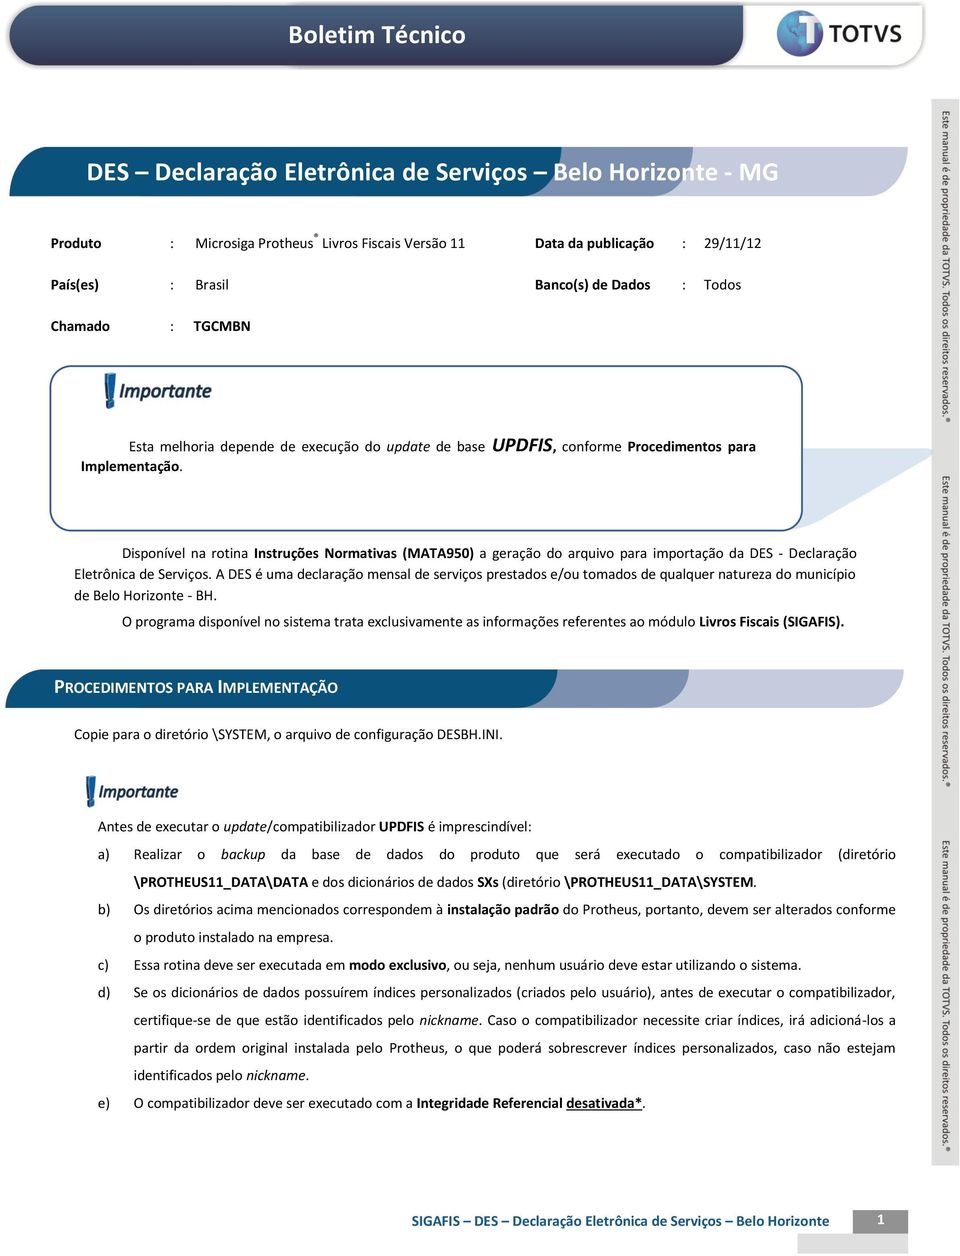 Disponível na rotina Instruções Normativas (MATA950) a geração do arquivo para importação da DES - Declaração Eletrônica de Serviços.